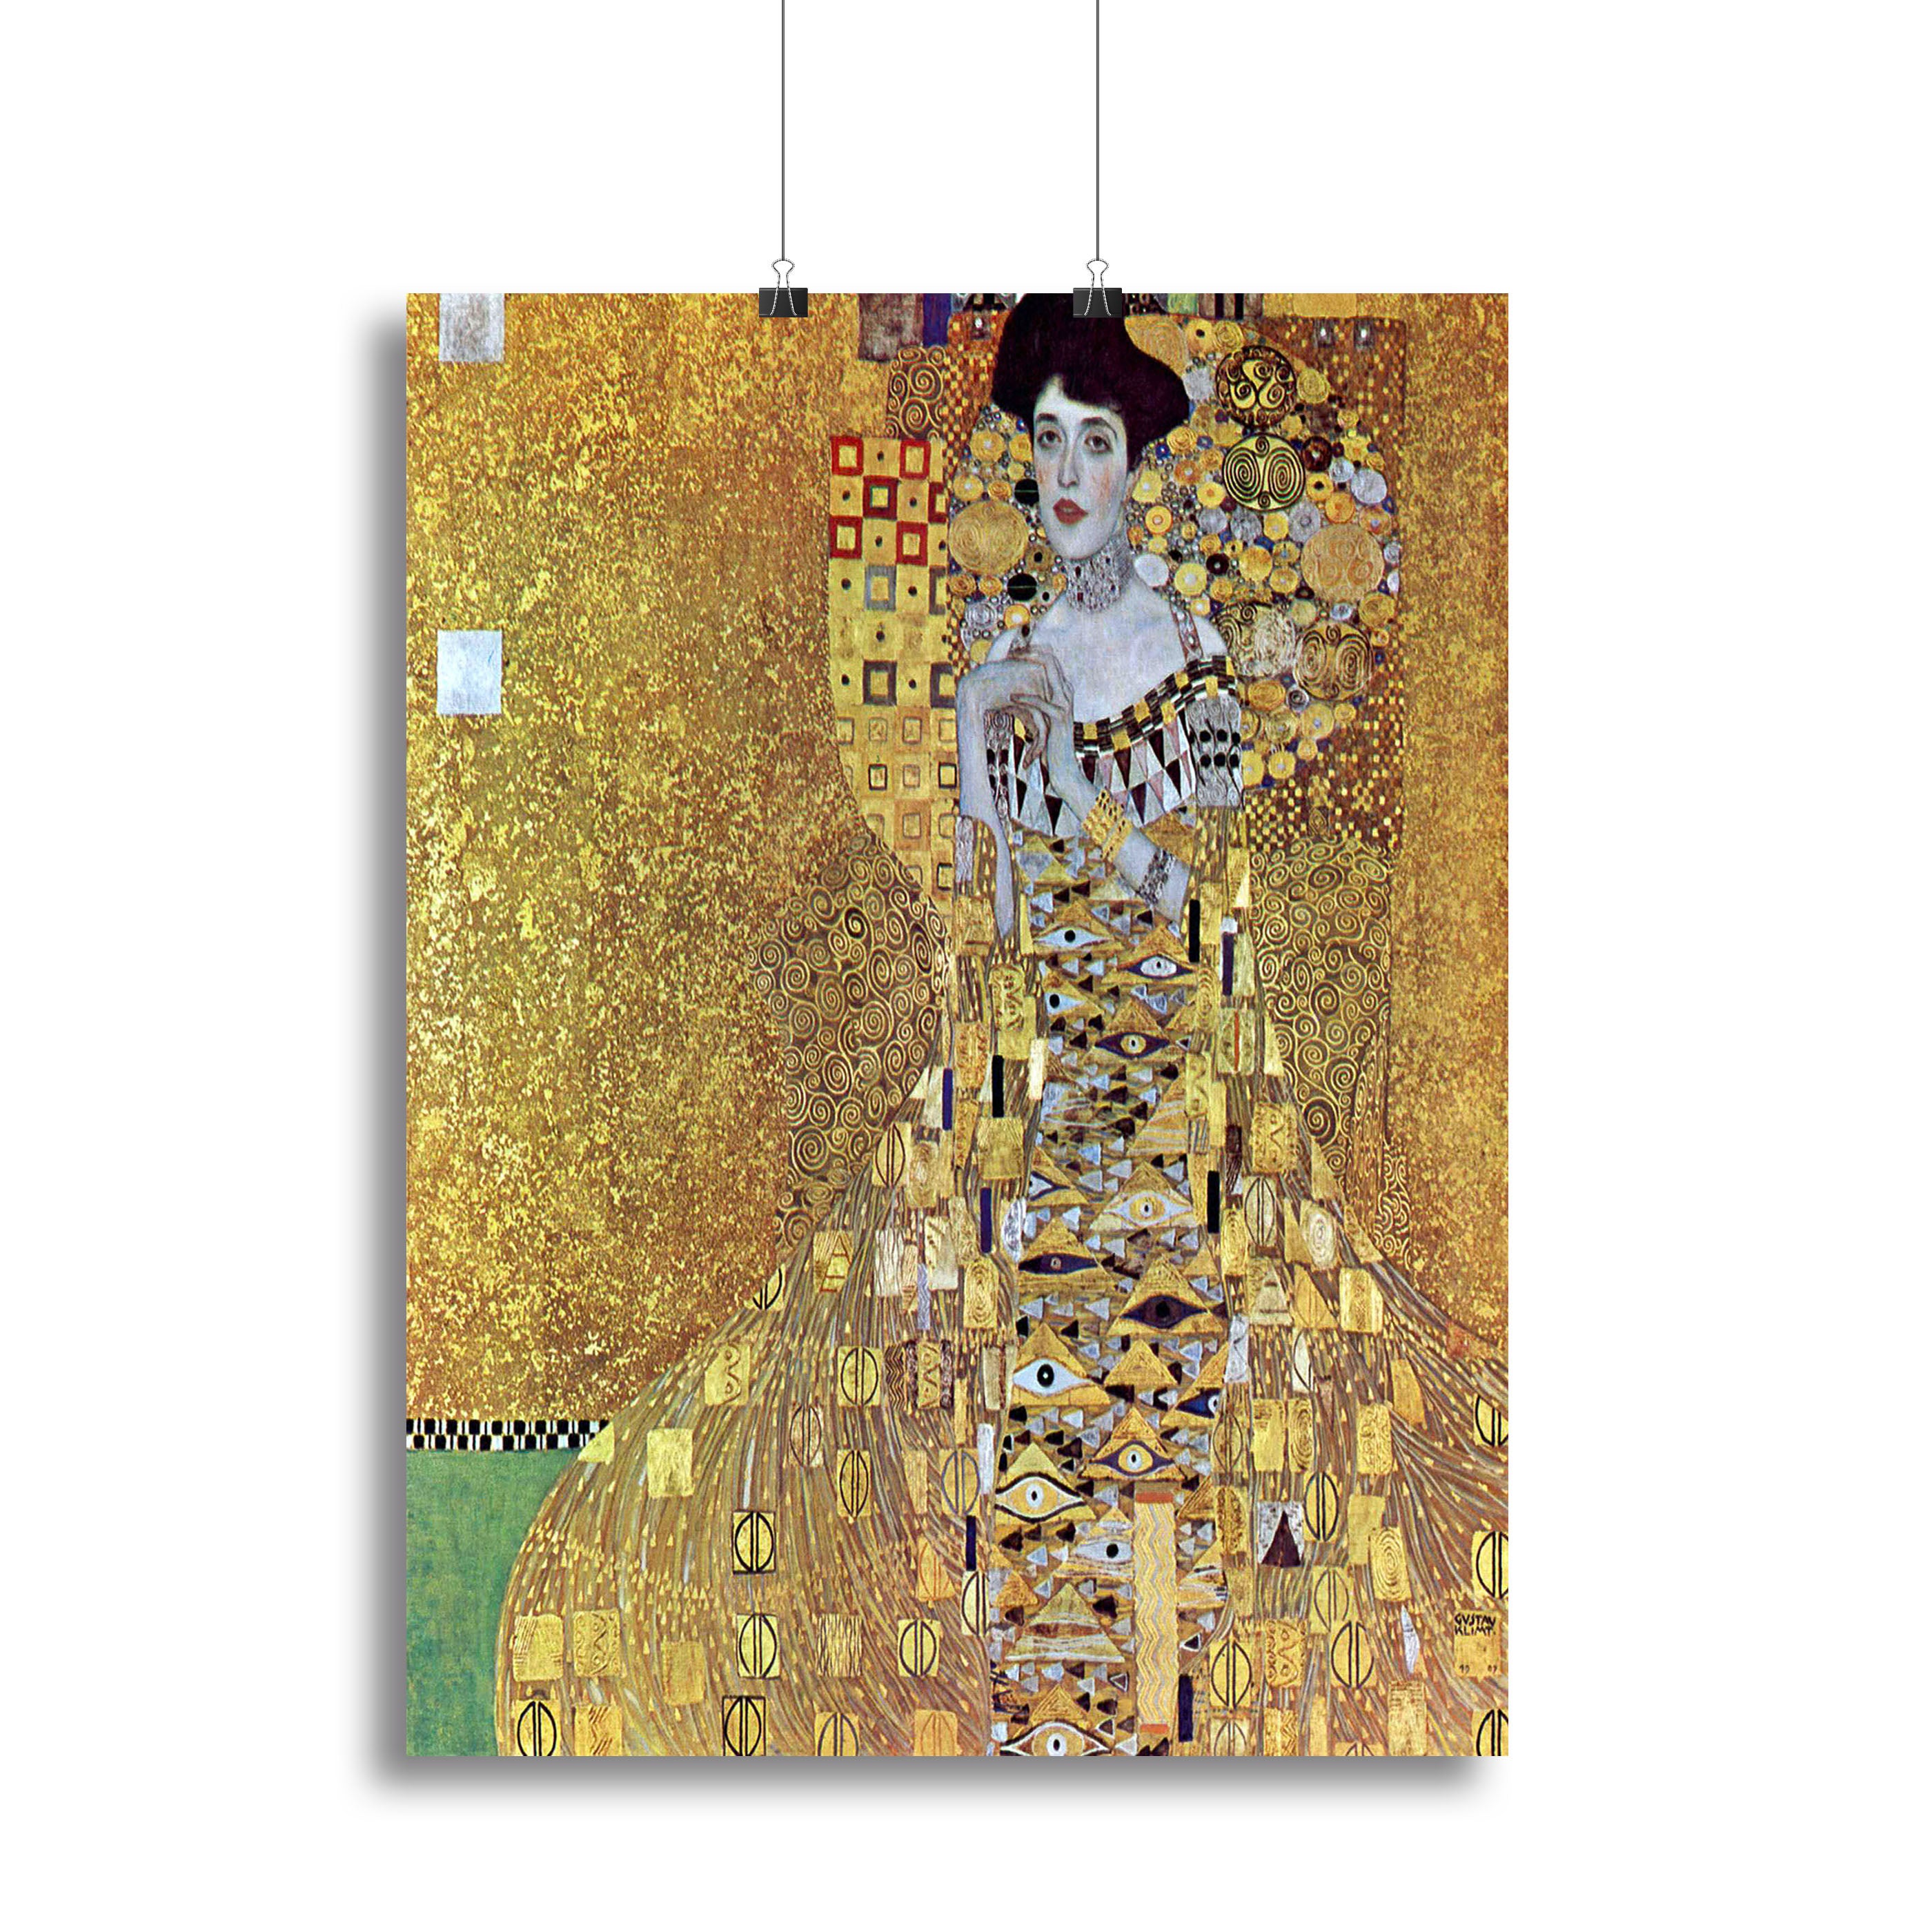 Portrait of Block Bauer 2 by Klimt Canvas Print or Poster - Canvas Art Rocks - 2